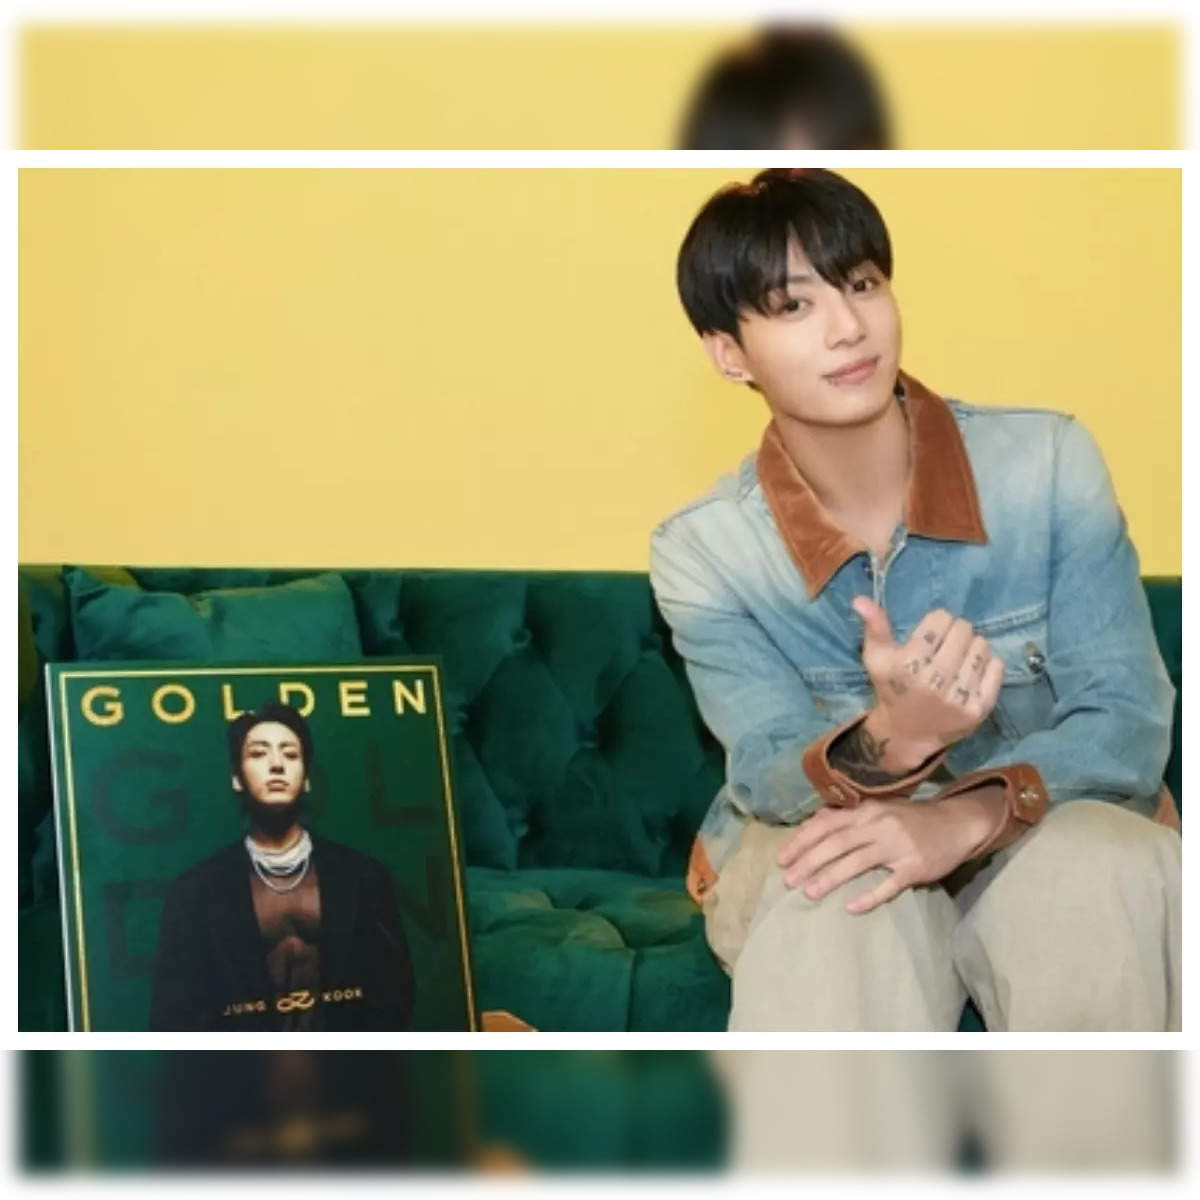 BTS Jungkook is in his 'Golden' era